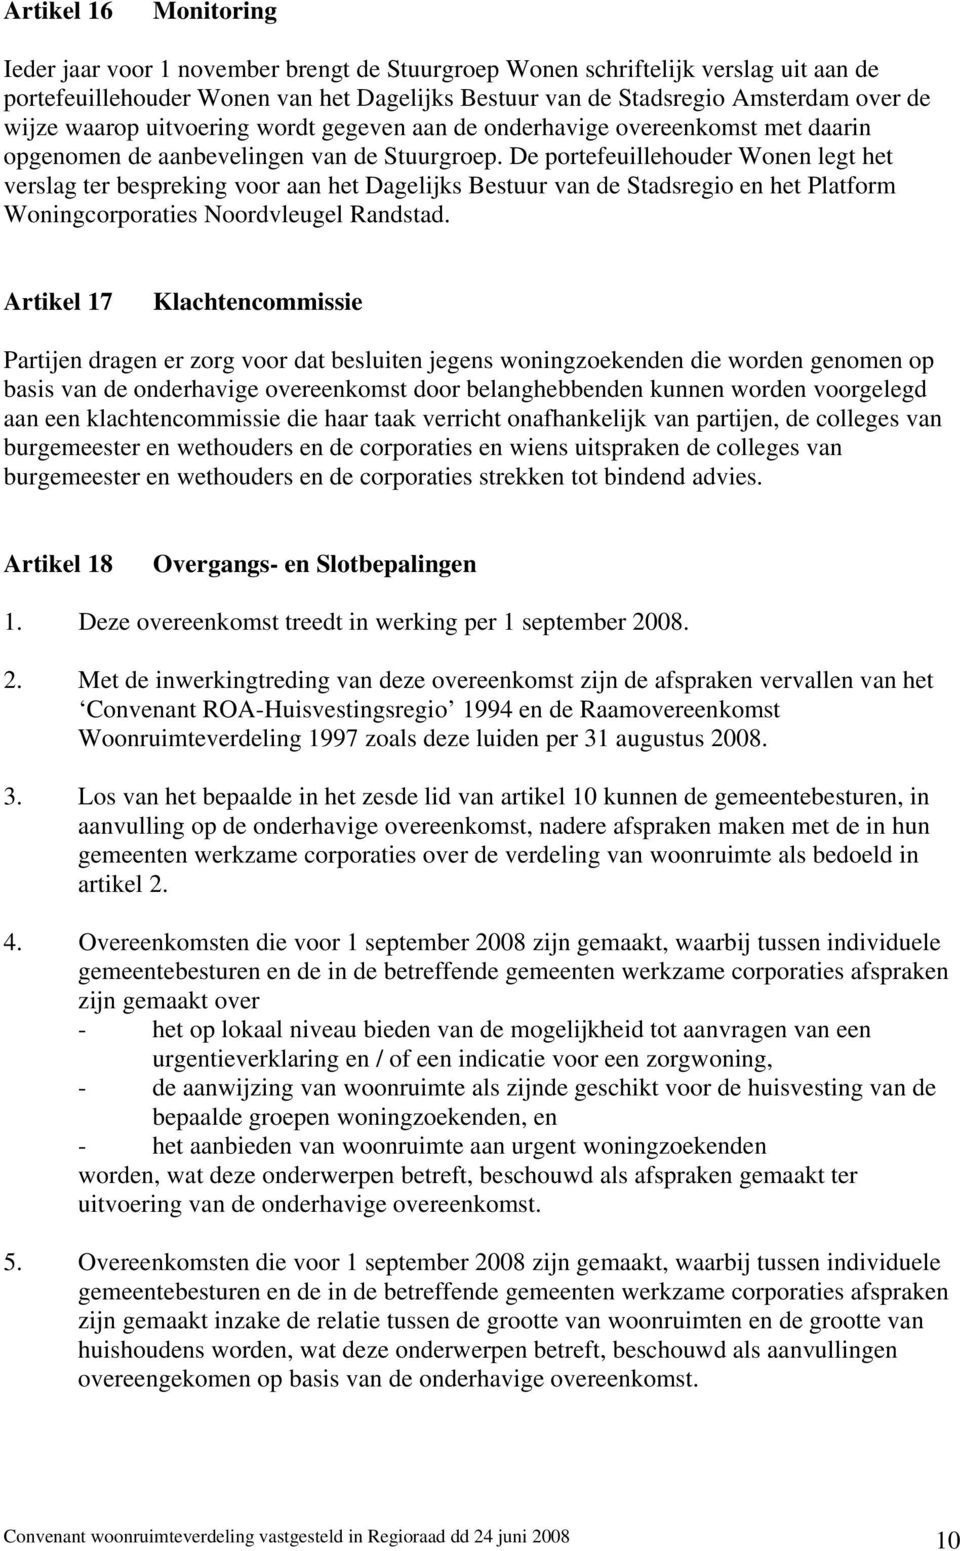 De portefeuillehouder Wonen legt het verslag ter bespreking voor aan het Dagelijks Bestuur van de Stadsregio en het Platform Woningcorporaties Noordvleugel Randstad.